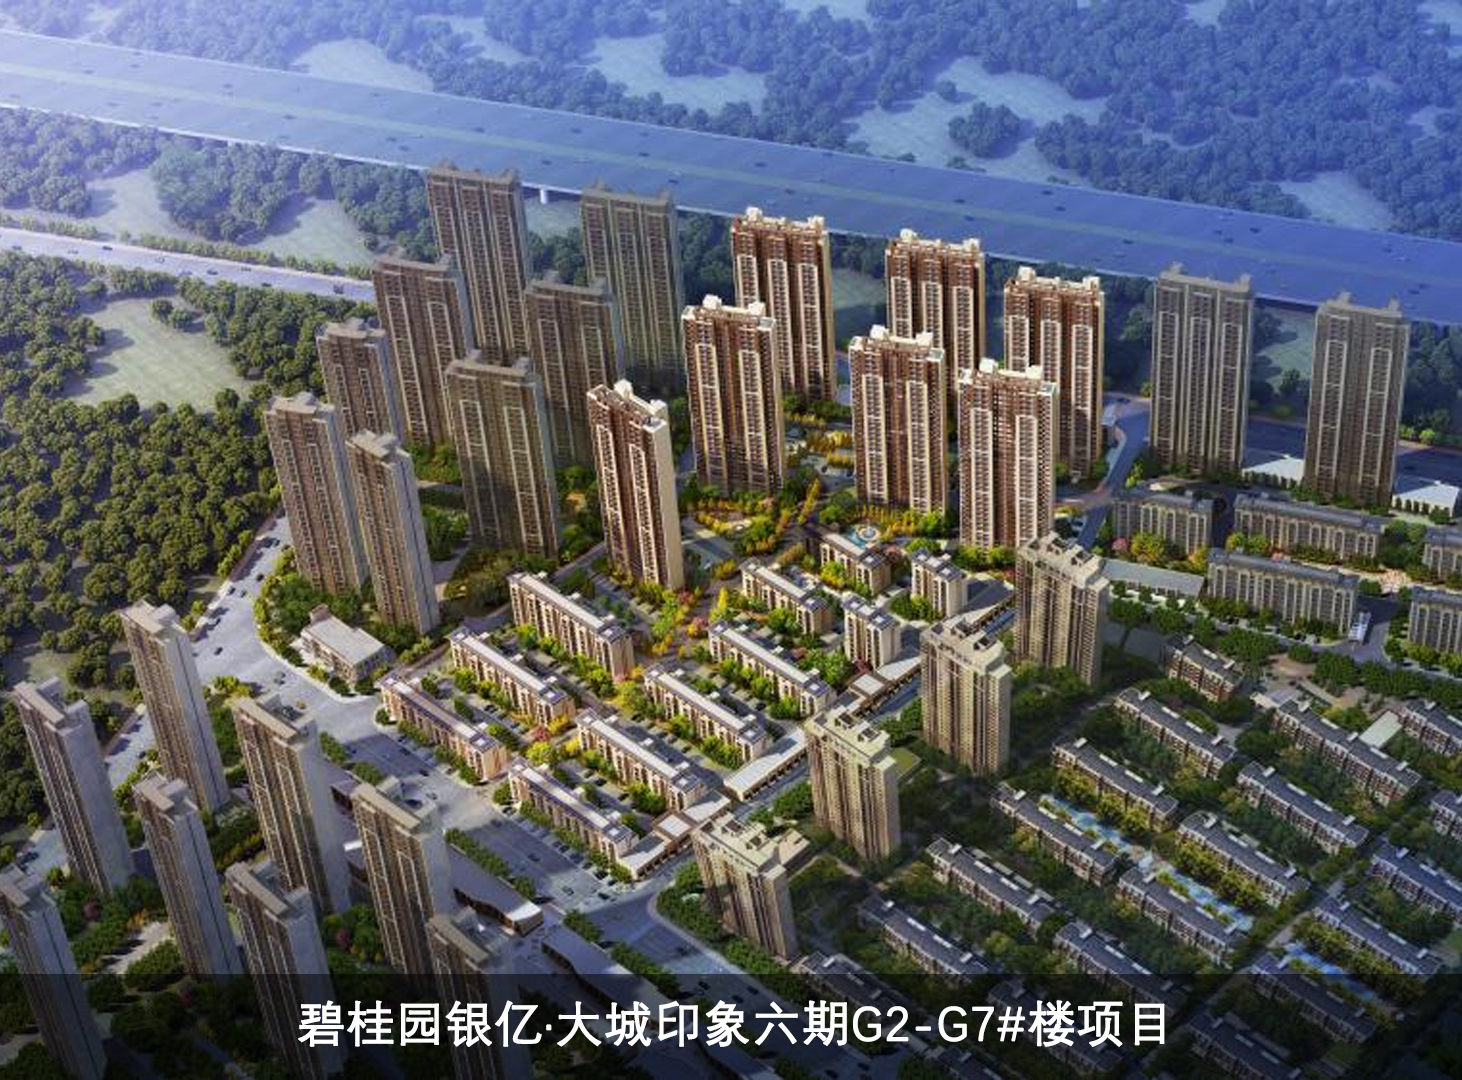 3.工程案例-碧桂园银亿·大城印象六期G2-G7-楼项目